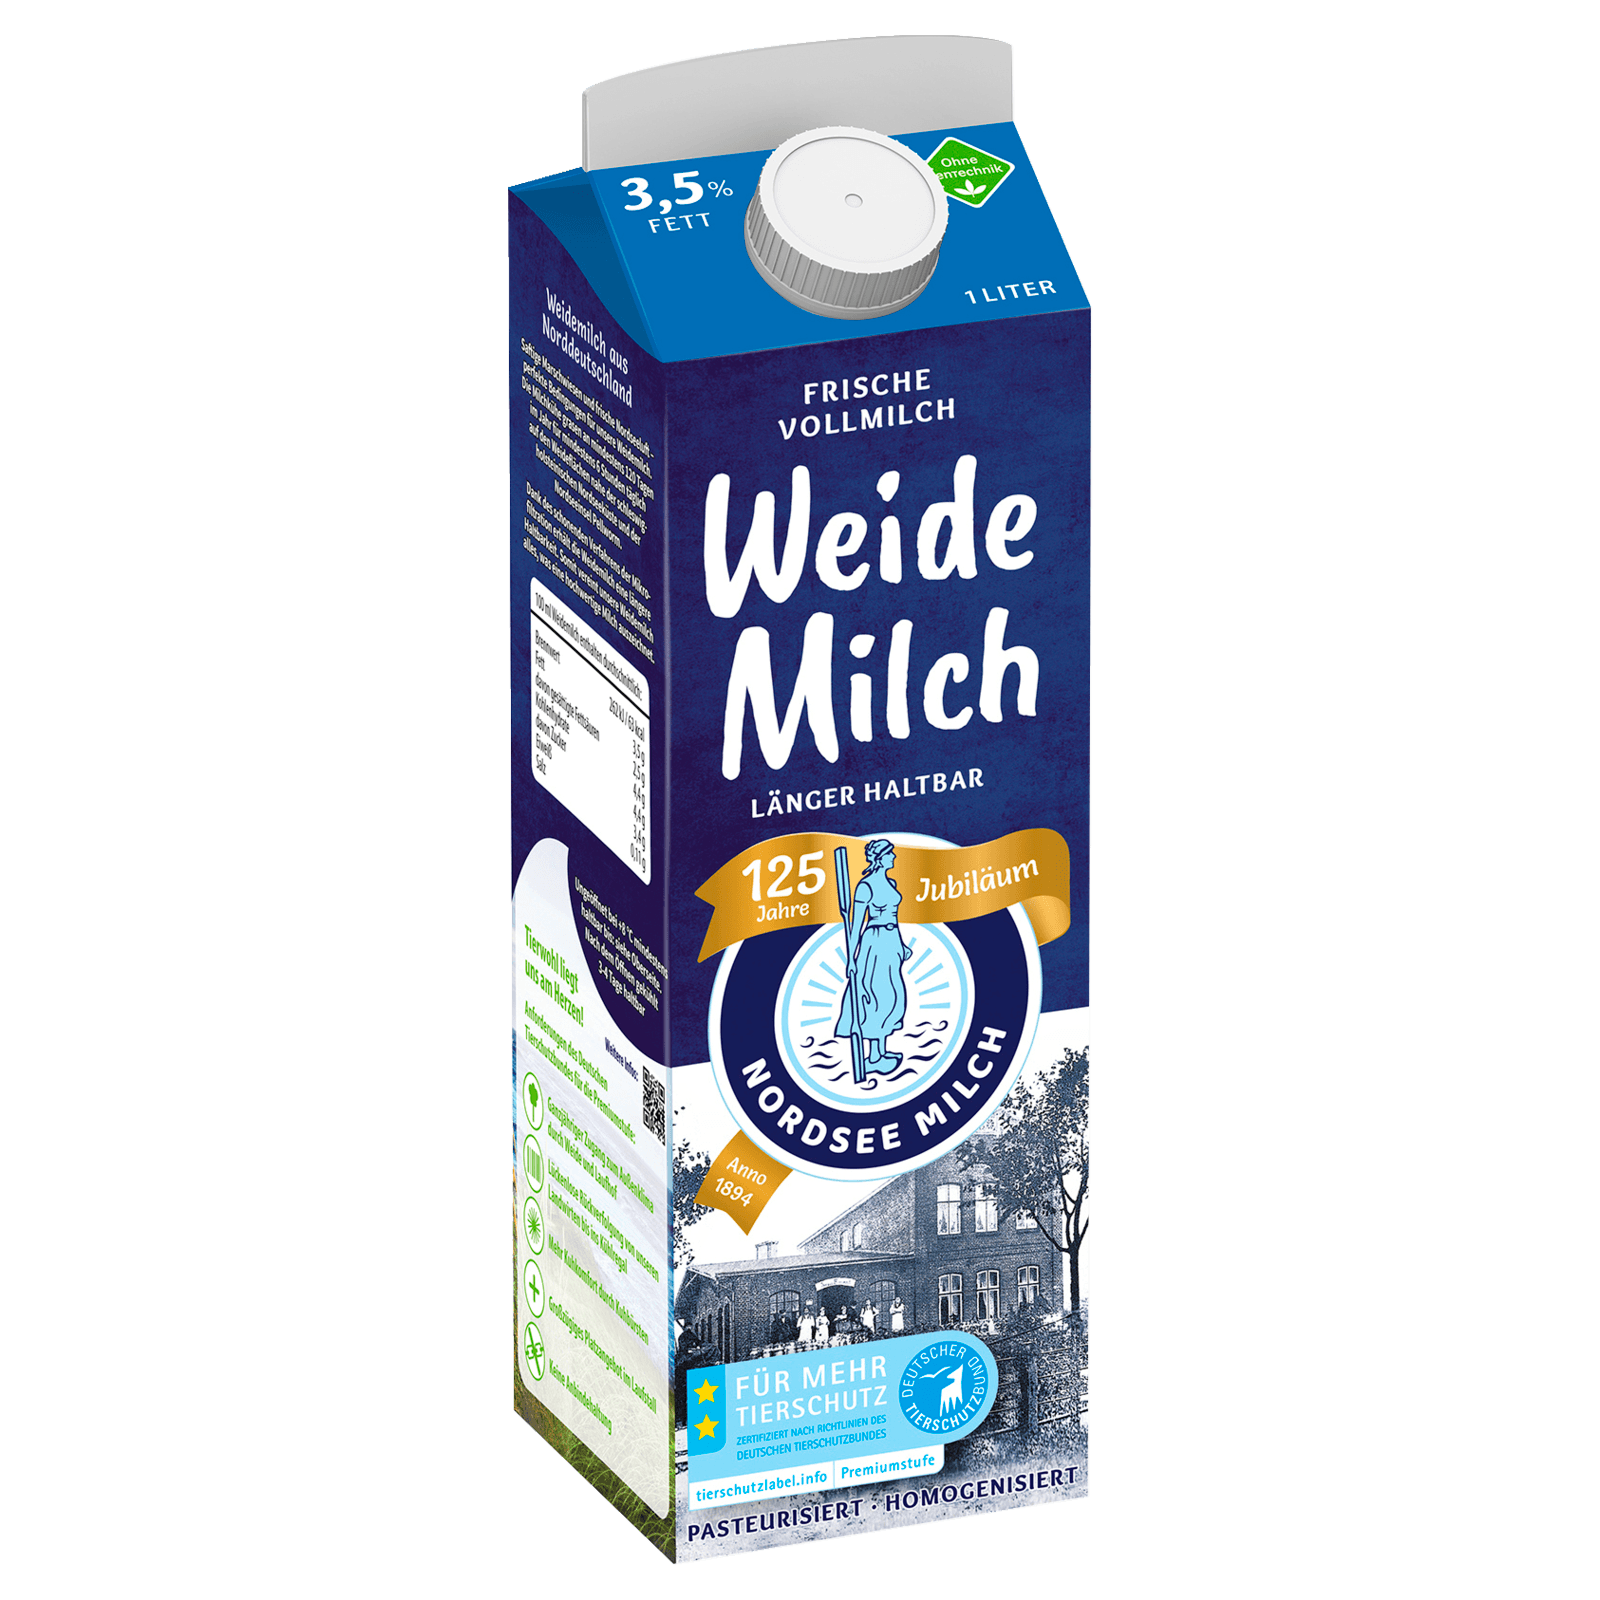 Nordsee Milch Weide Milch 1l  für 1.59 EUR